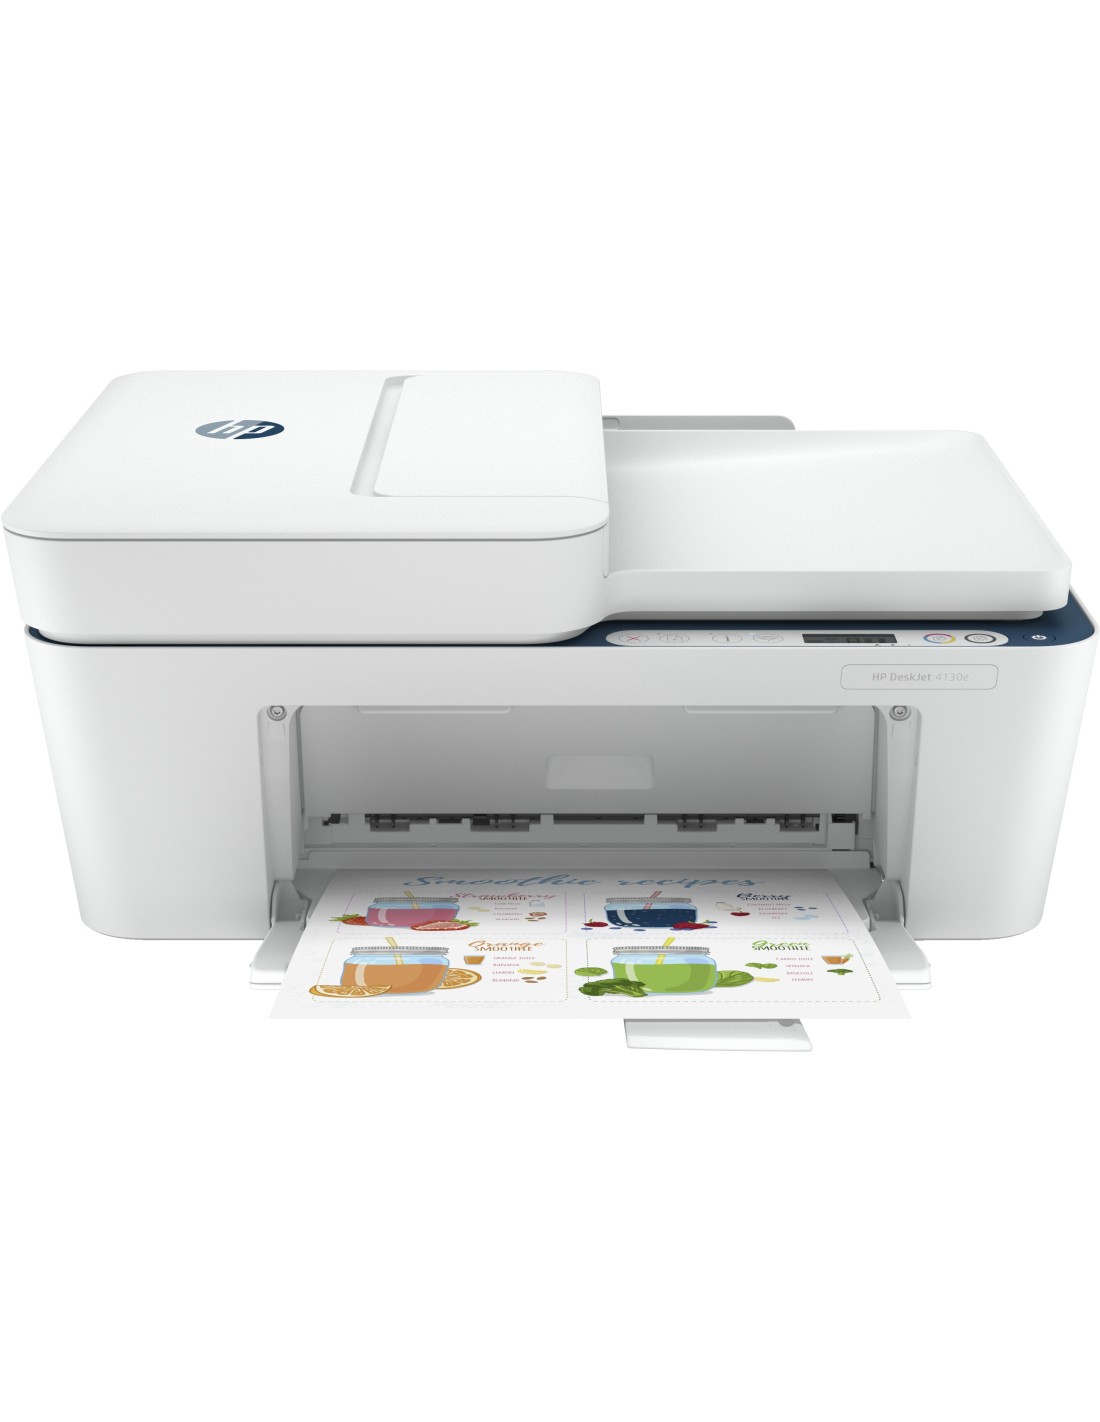 https://ultimainformatica.com/2020935-thickbox_default/hp-deskjet-impresora-multifuncion-hp-4130e-color-impresora-para-hogar-impresion-copia-escaneado-y-envio-de-fax-movil-hp.jpg